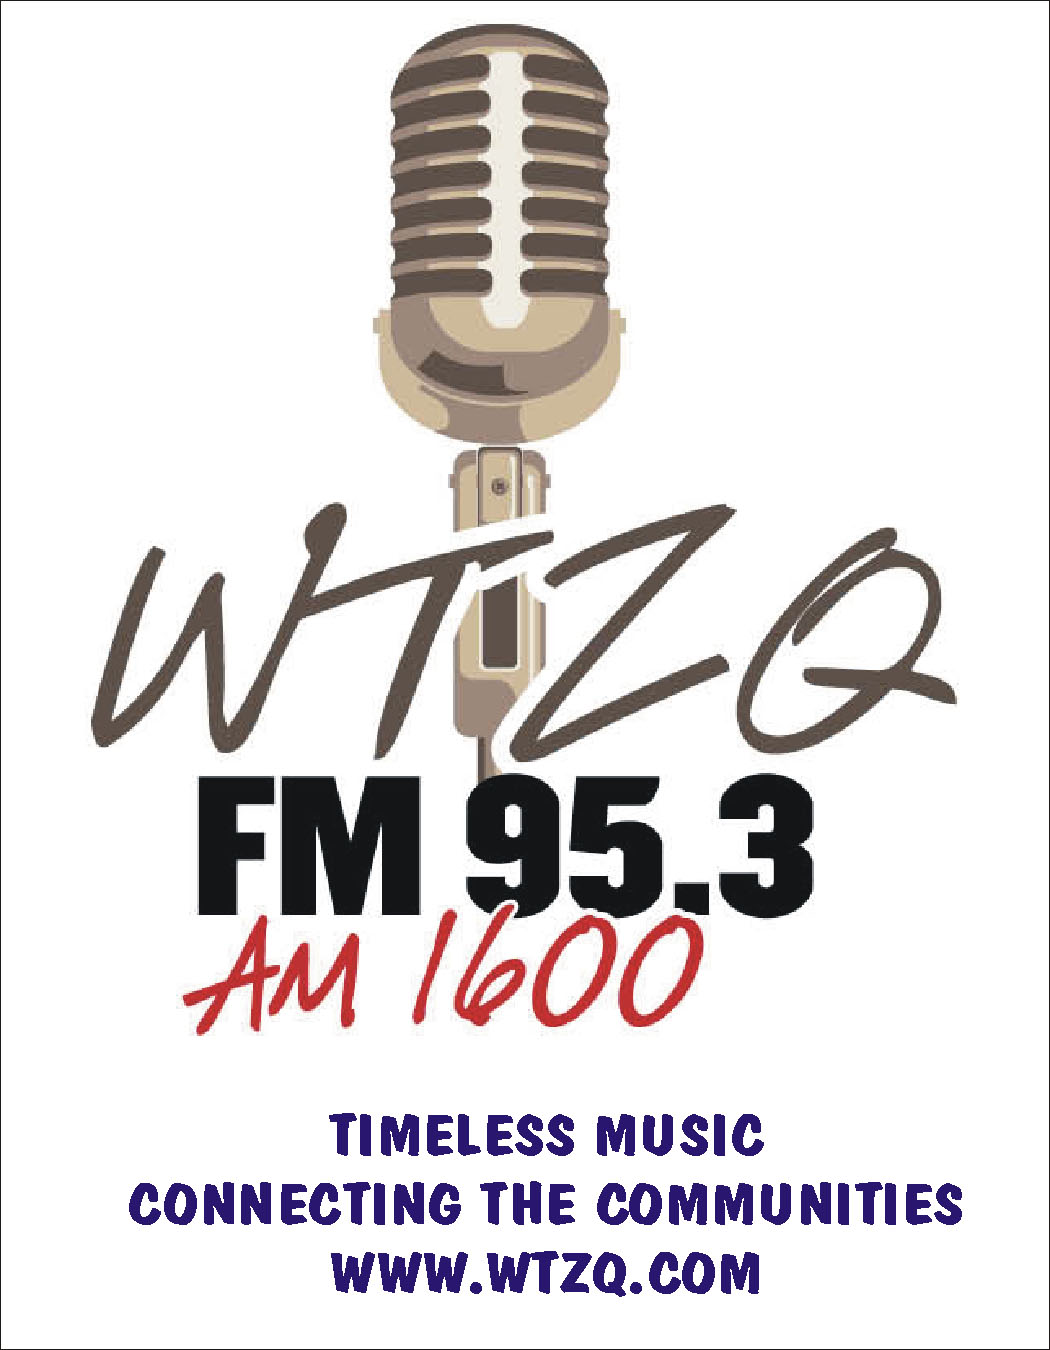 WTZQ FM 95.3 AM 1600